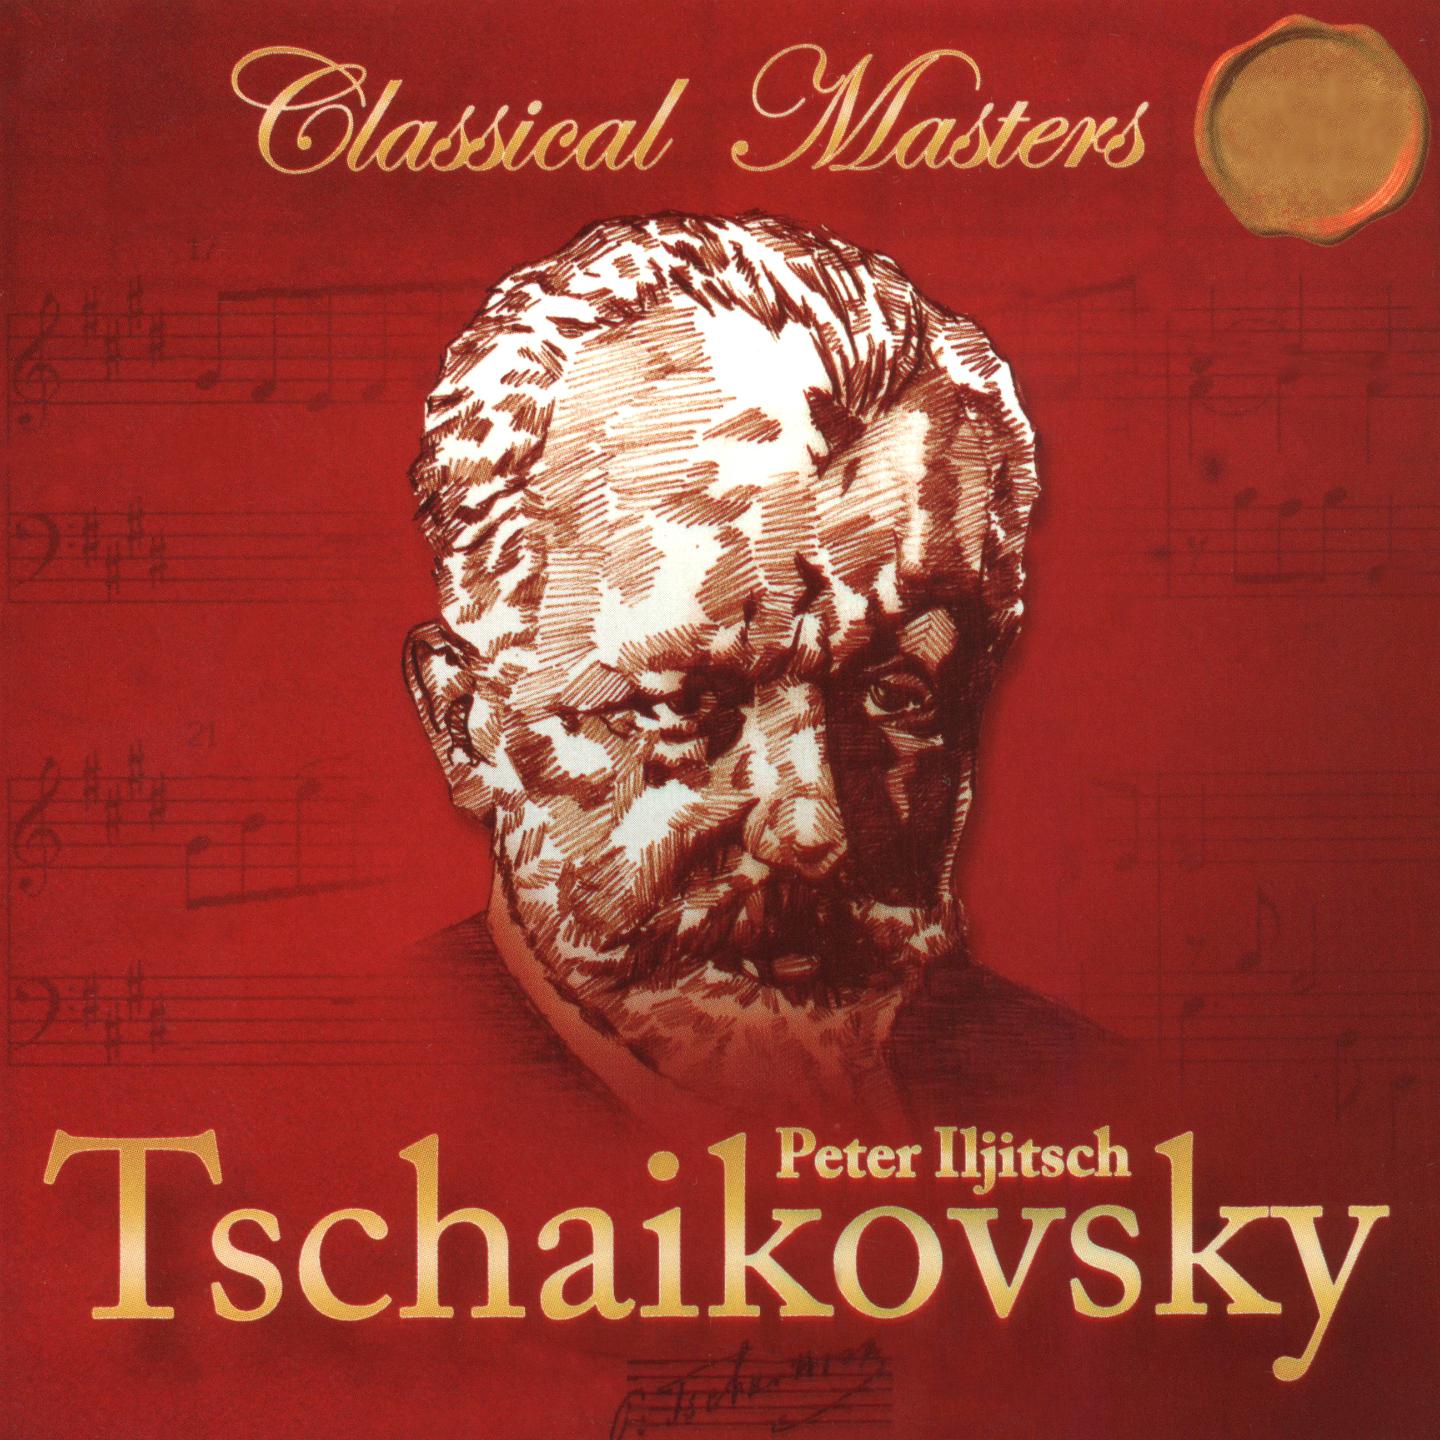 Tchaikovsky: The Nutcracker, Op. 71a, TH 35 & Swan Lake, Op. 20, TH 219